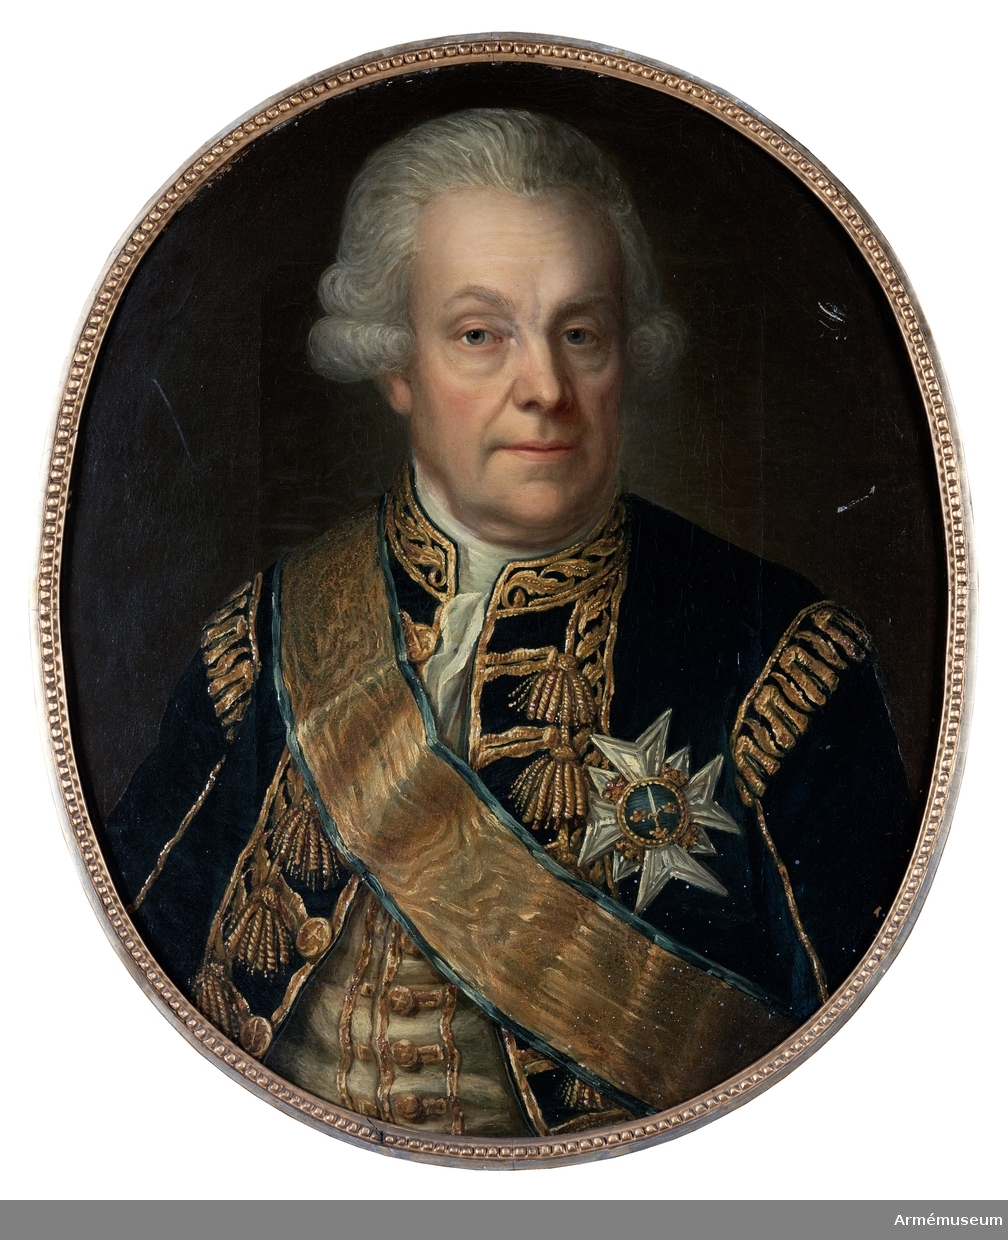 Porträtt av Zöge von Manteuffel.
Oljemålning i form av porträtt utfört av Anders Eklund (1737-1802), föreställande O.J.Z von Manteuffel.
Beskrivning enl Peyron: Bröstbild framåtvänd, huvudet bart, vitt hår, lockigt vid sidorna, slätrakad. Uniformsrock, rikt guldbroderad på framvåderna och axlarne, öppen med ståndkrage, vit halsduk, ljusgul, guldbroderad väst med förgyllda knappar, svärdsordens storkkorskraschan och ordensband utanpå uniformen.
På sockeln: (utom namnet) Chef för Hertig Fredric Adolphs regemente och för H.M. Enkedrottningens Lifregemente 8/1 1766- 20/2 1782.
Infattning: Oval, slät förgylld träram i gustaviansk stil med en bandrosett ovanpå och en pälsrand innerst.
På baksidan: (med bläck) Otto J Freij Herr Zöge von Manteufell. General af Infanteri. Commendeur med stora korset af Svärdsorden. Förste Stallmästare hos H.K.H. Prinsessan Sophia Albertina. Född den 2 April 1718, Död den 6 Februari 1796. Anders Eklund Pinx. Stockholm 1793.